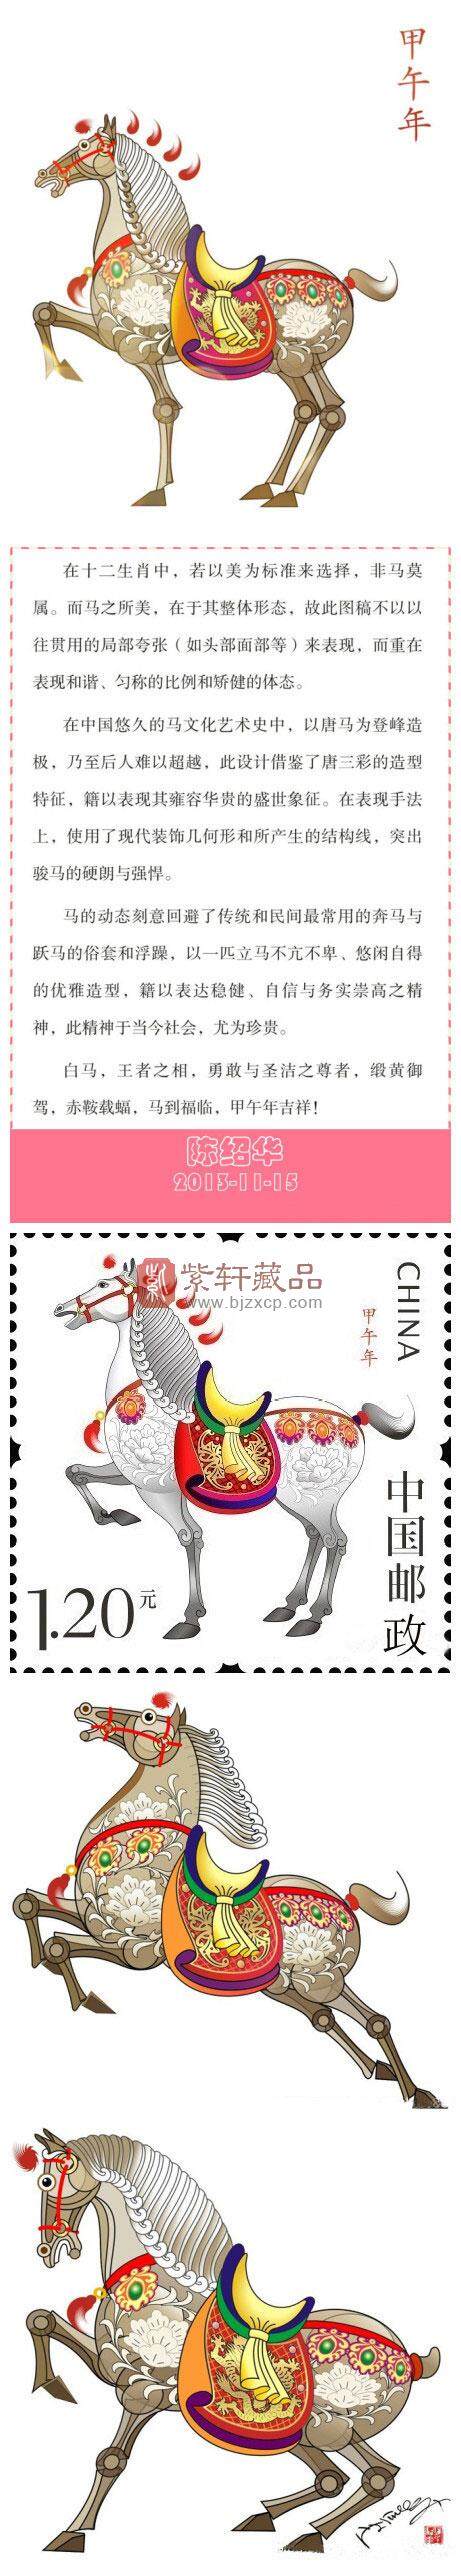 《甲午年》(马)特种邮票明年1月5日发行 